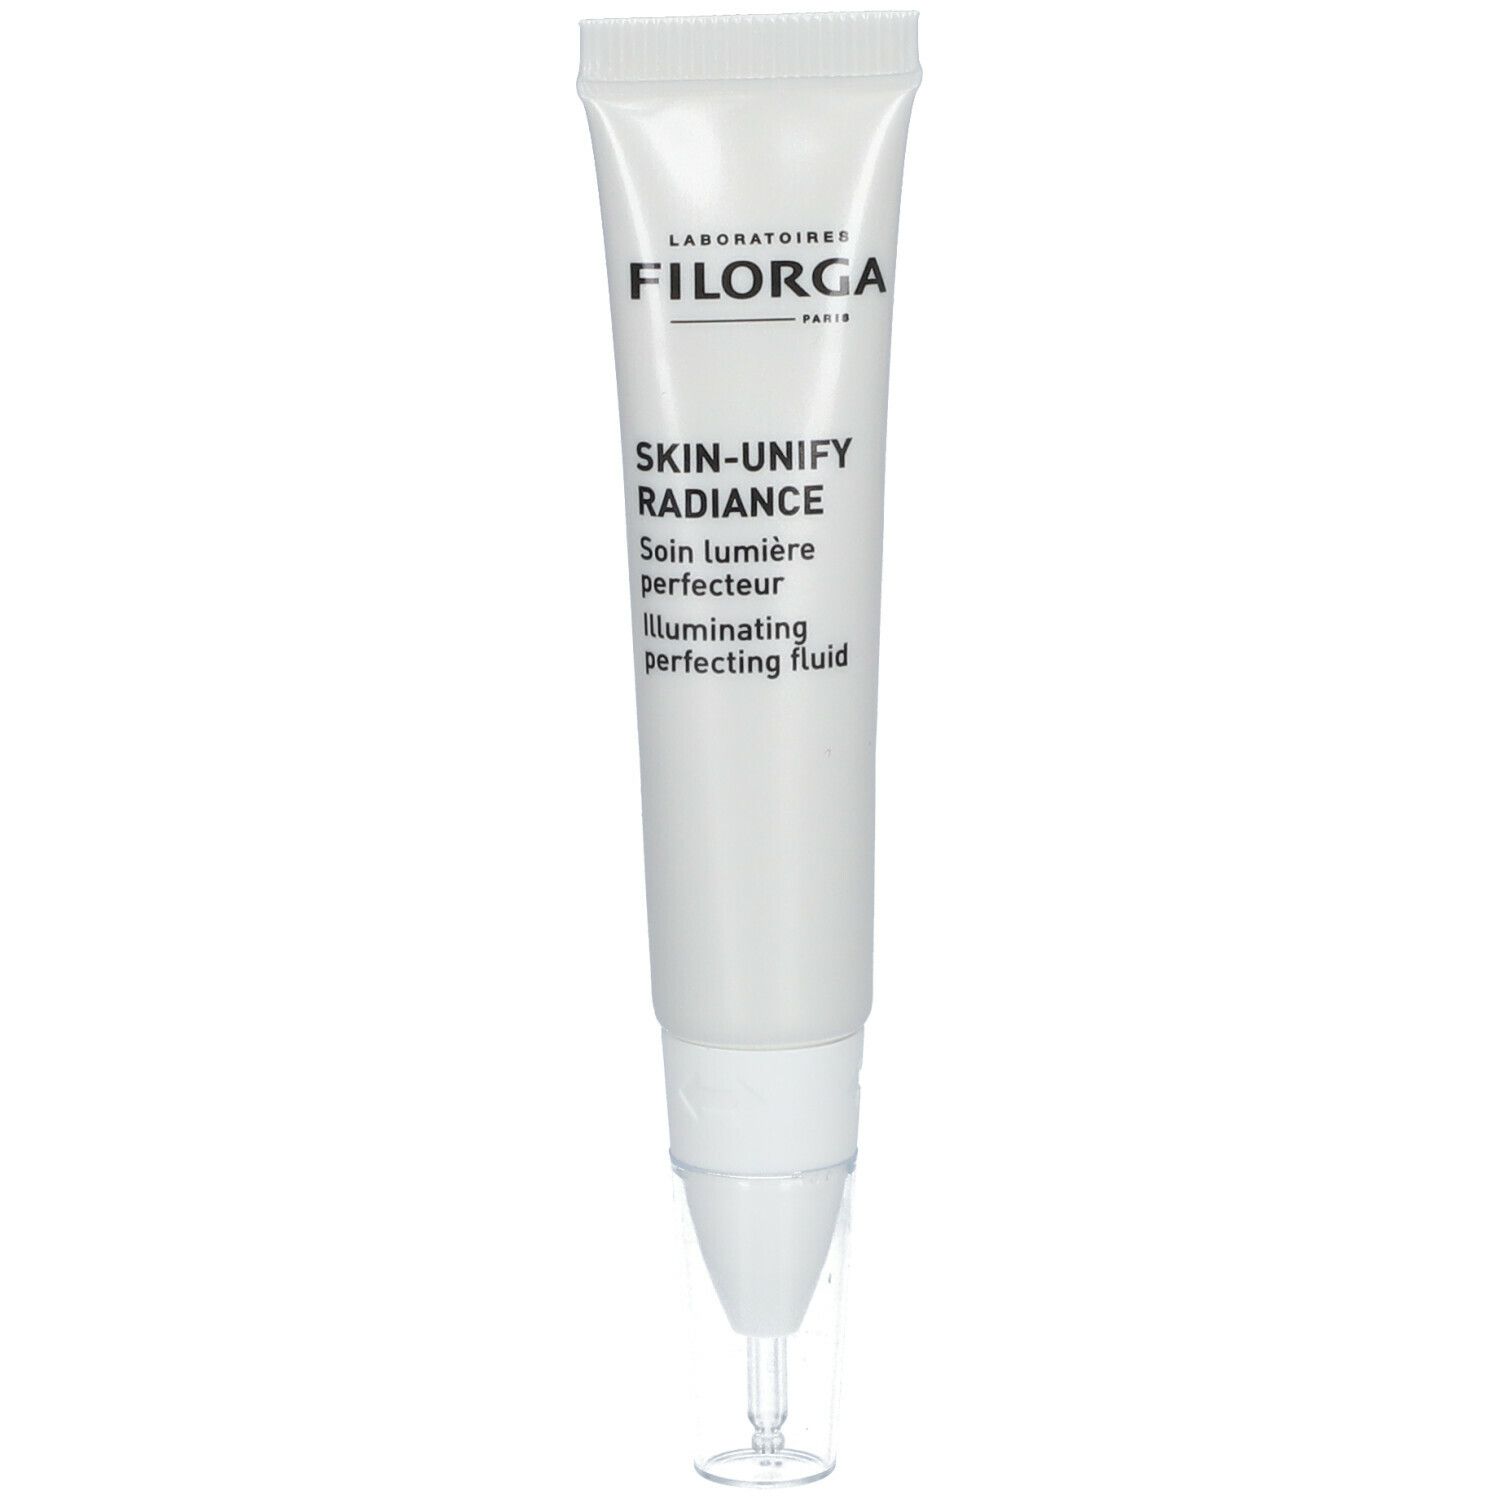 Laboratoires Filorga Skin-Unify Radiance Soin lumière perfecteur